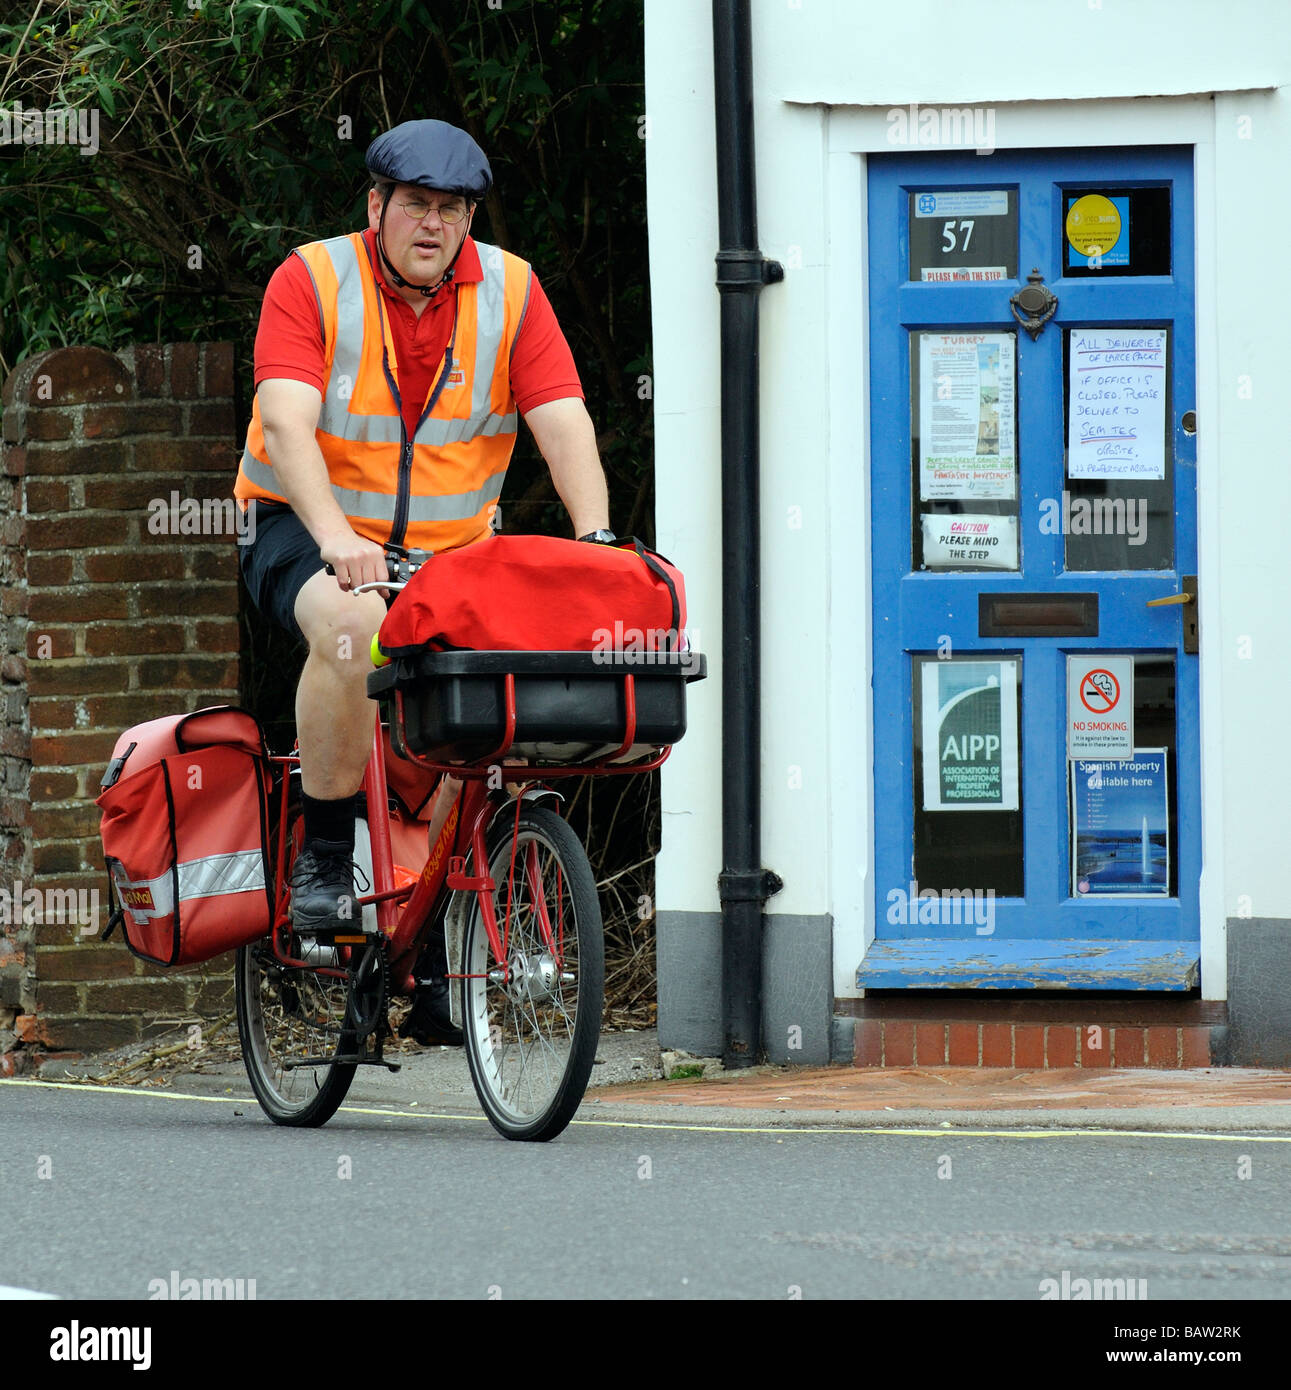 Postbote Radfahren auf seine Royal Mail Route Kopfschutz tragen  Stockfotografie - Alamy